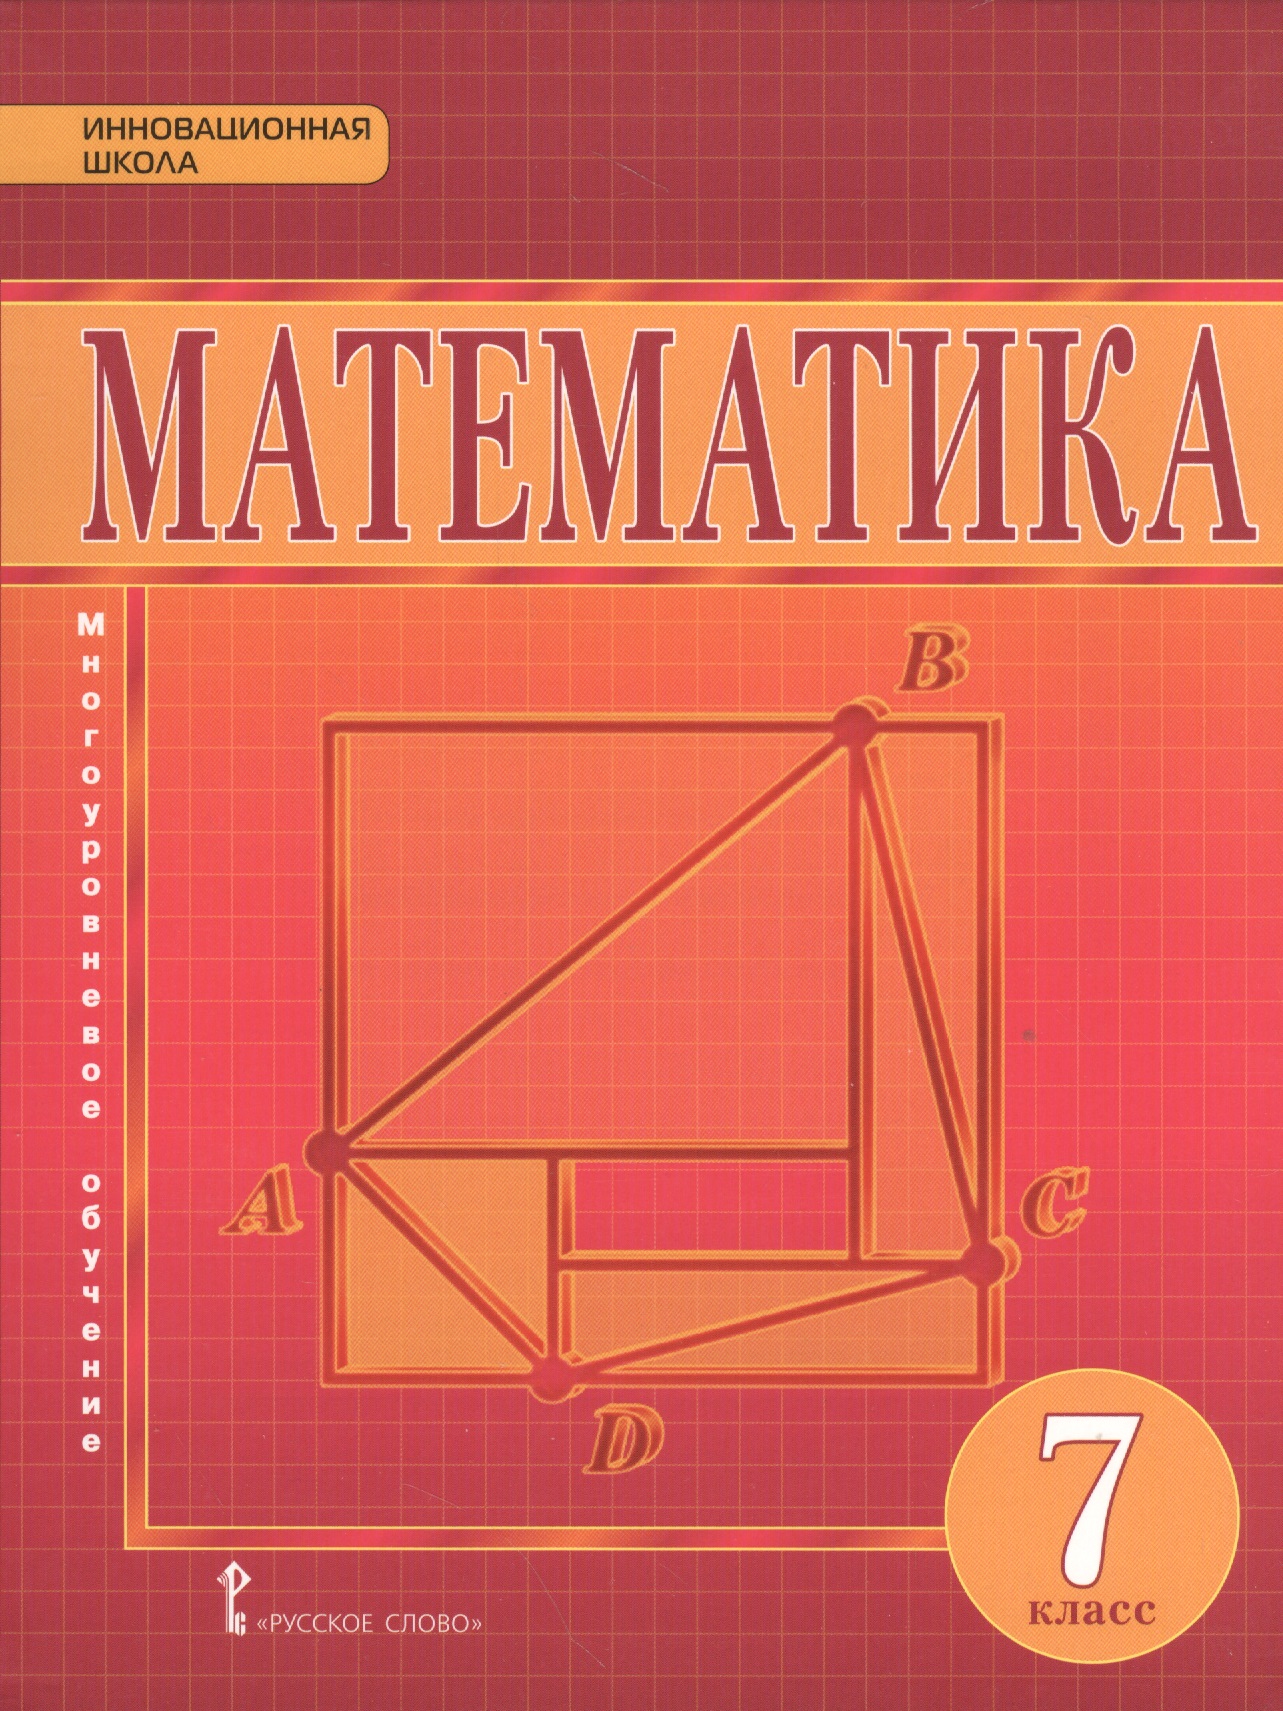 Математика 7 класс 2017 год. Учебник математики 7 класс. Математика 7 класс учебник. Учебник математике 7 класс. Математика геометрия 7 кл..